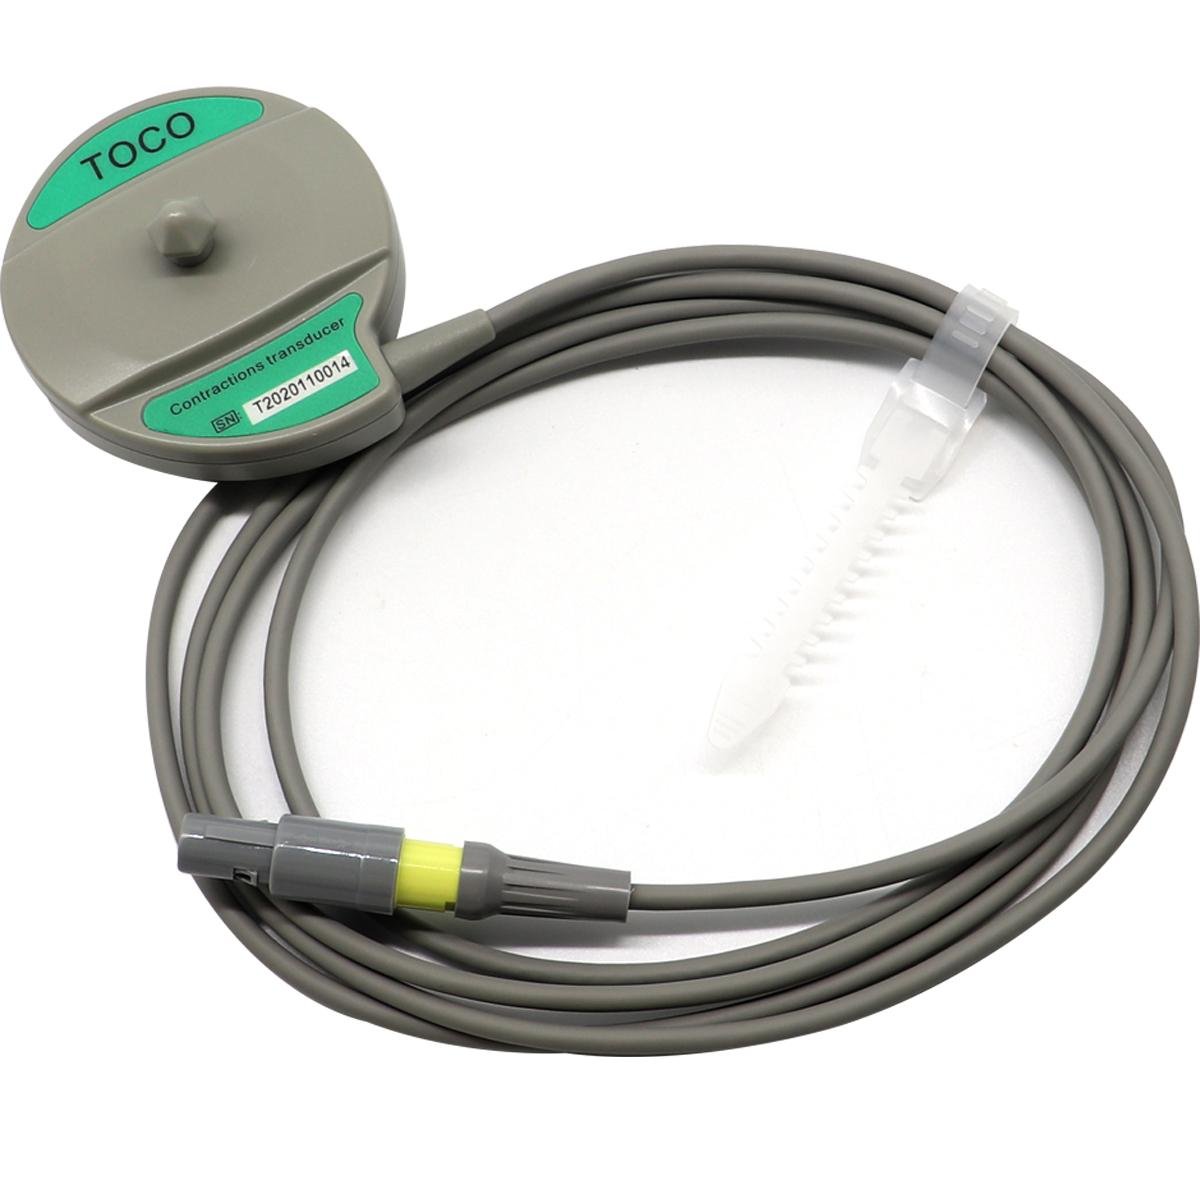 COMEN 5000C/5000E fetal heart rate monitor 4 needle single slot probe